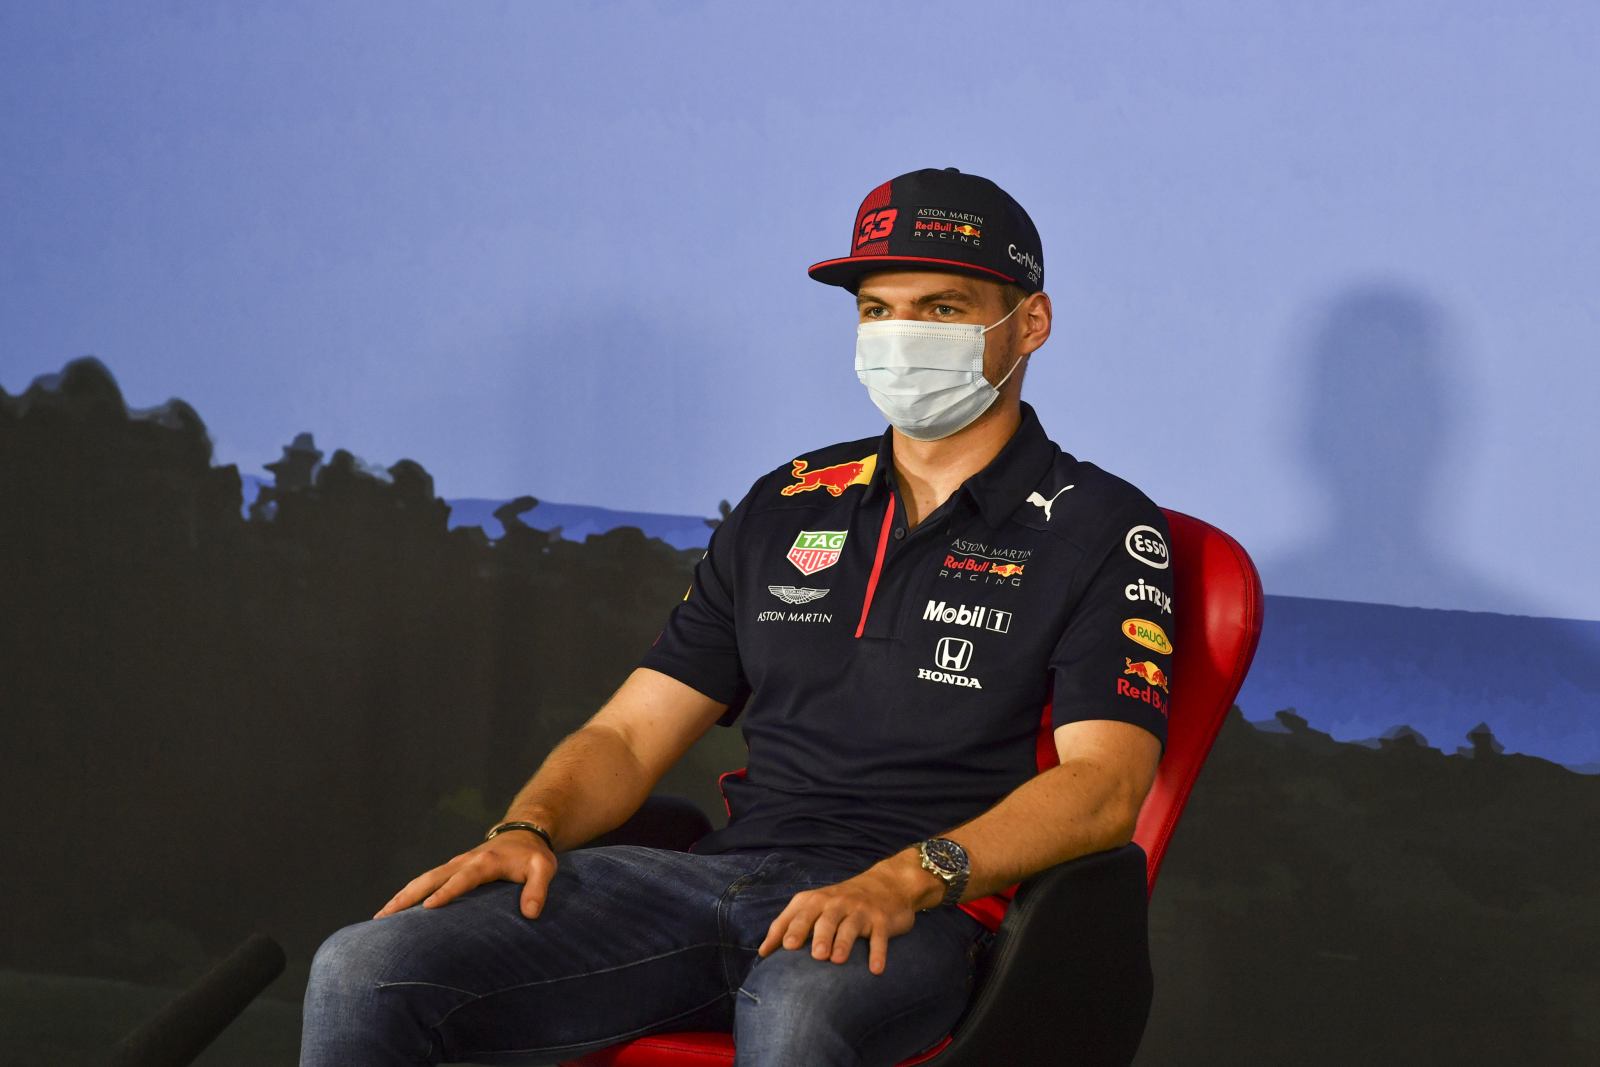 Terceiro colocado no Mundial em 2019, Verstappen desponta como candidato ao título pela Red Bull 